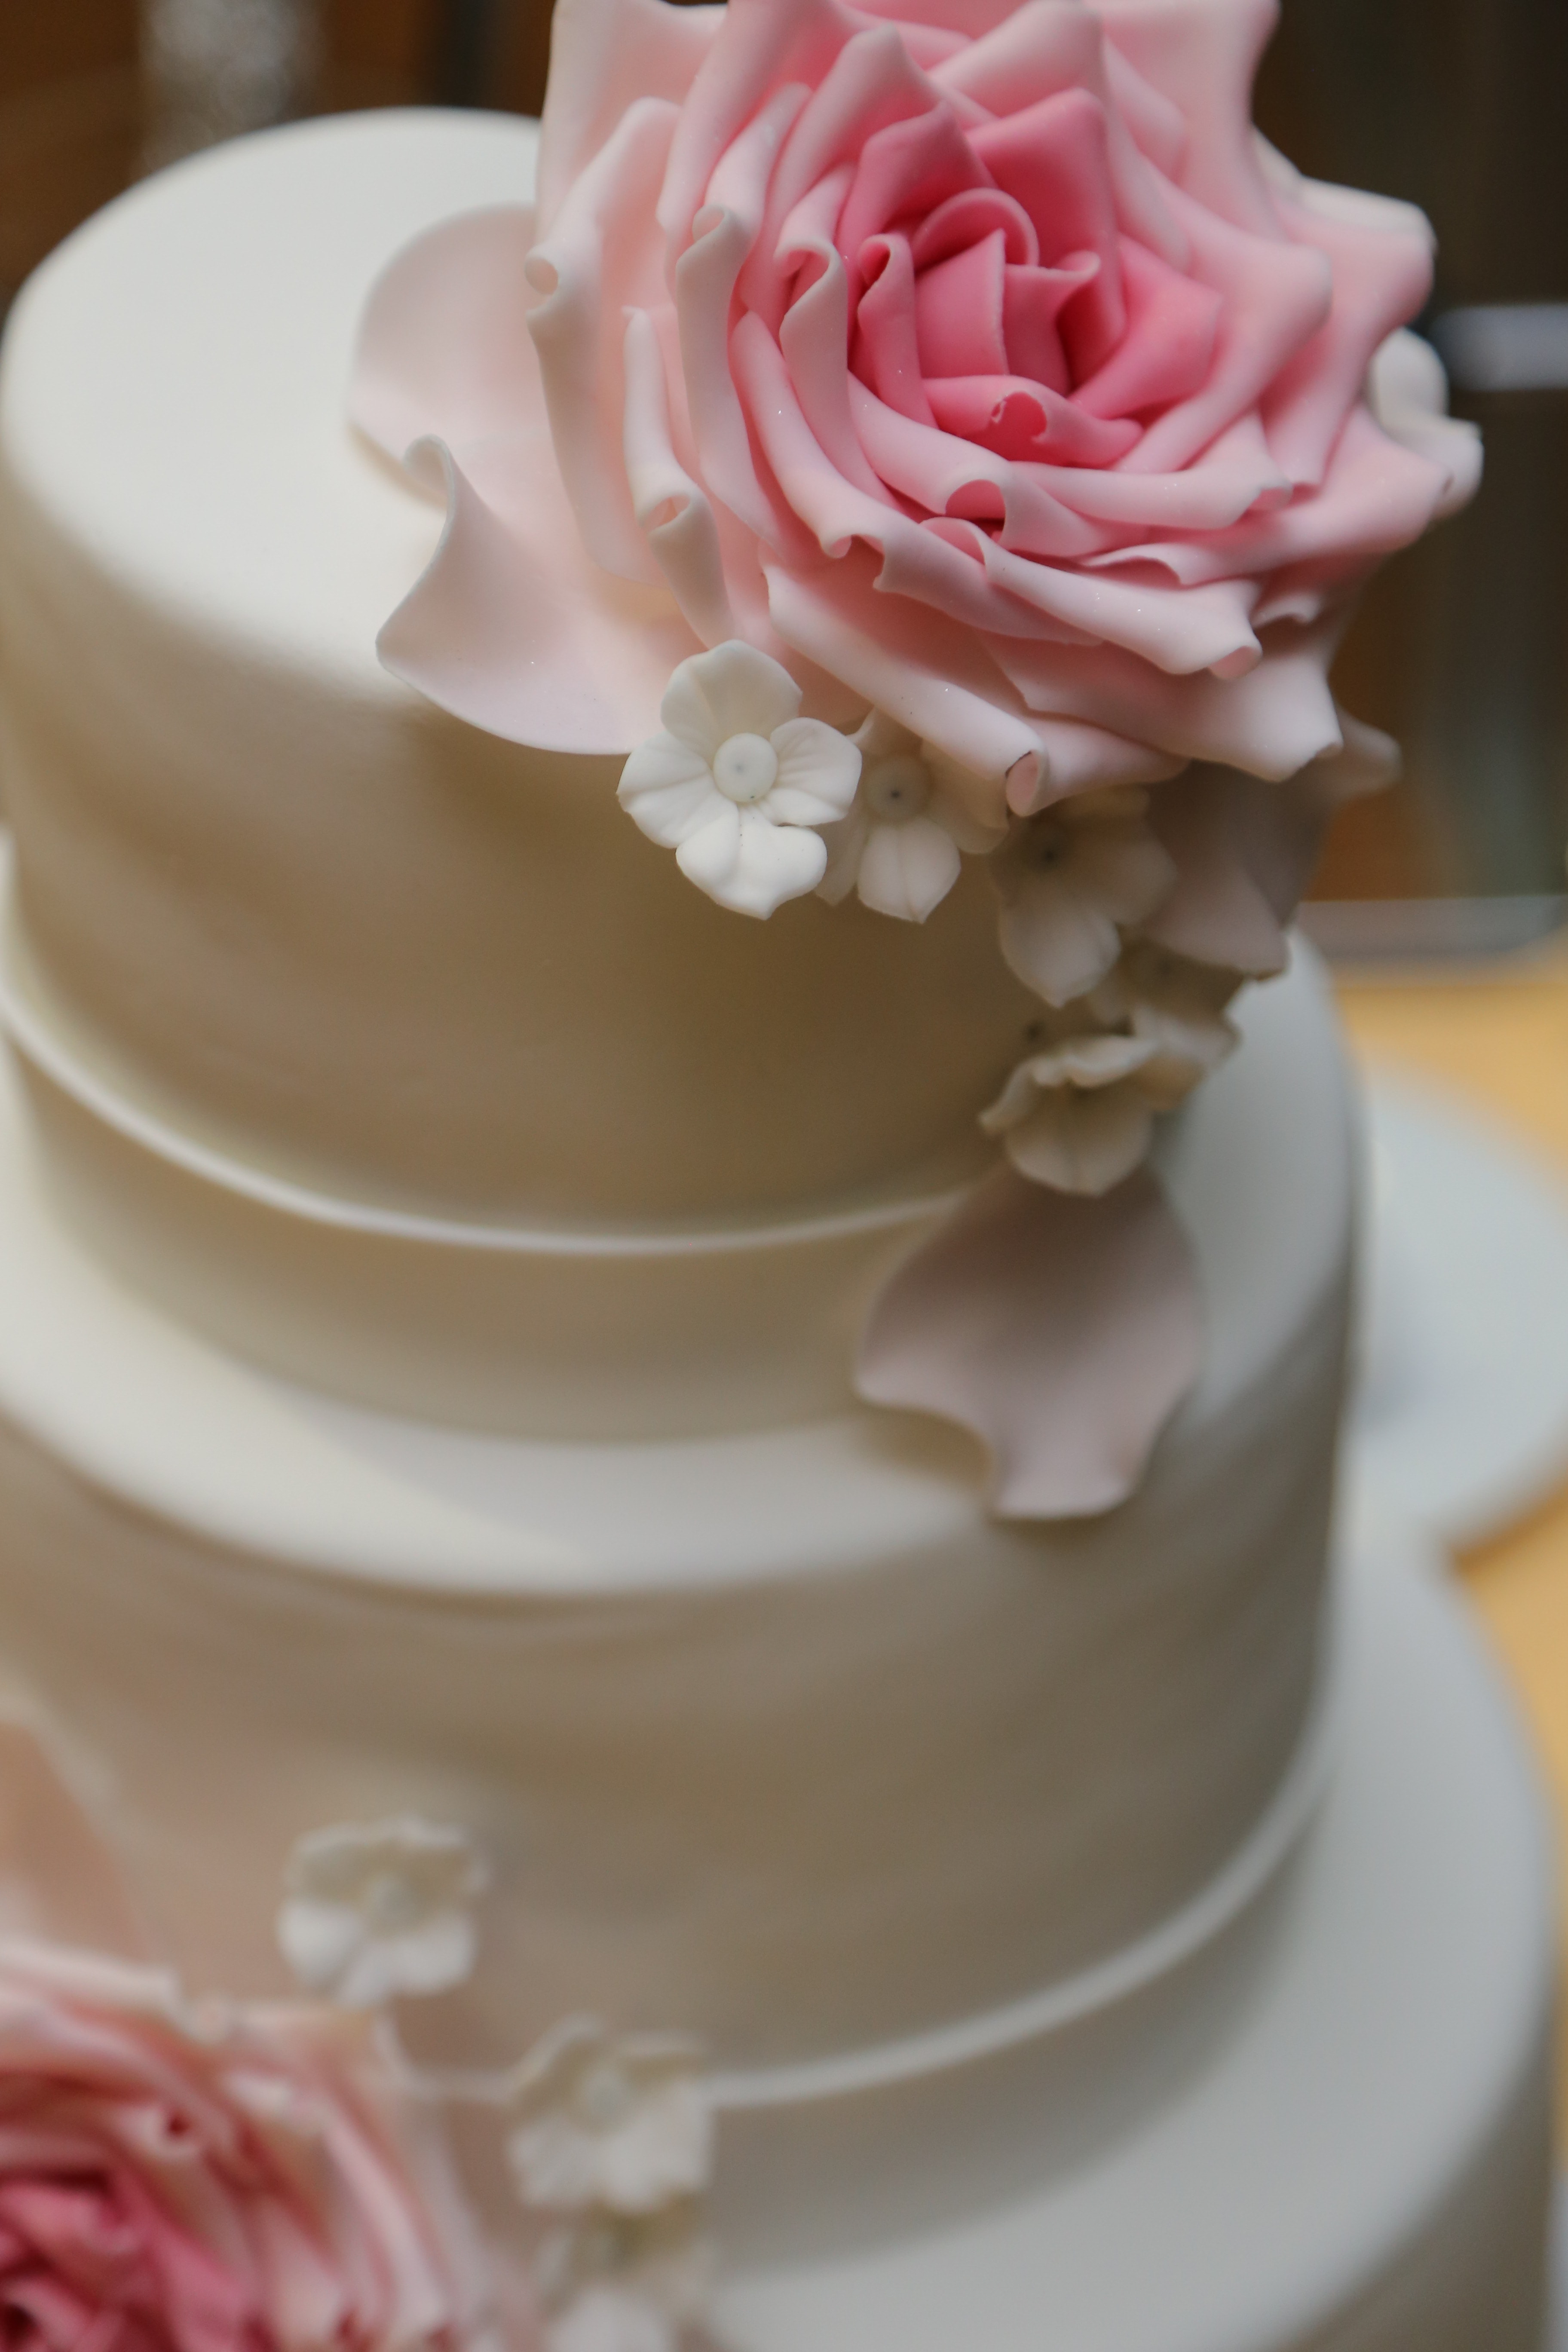 フリー写真画像 ケーキ ウエディング ケーキ ロマンチックです エレガントです ロマンス 愛 結婚式 ローズ 花 カップ